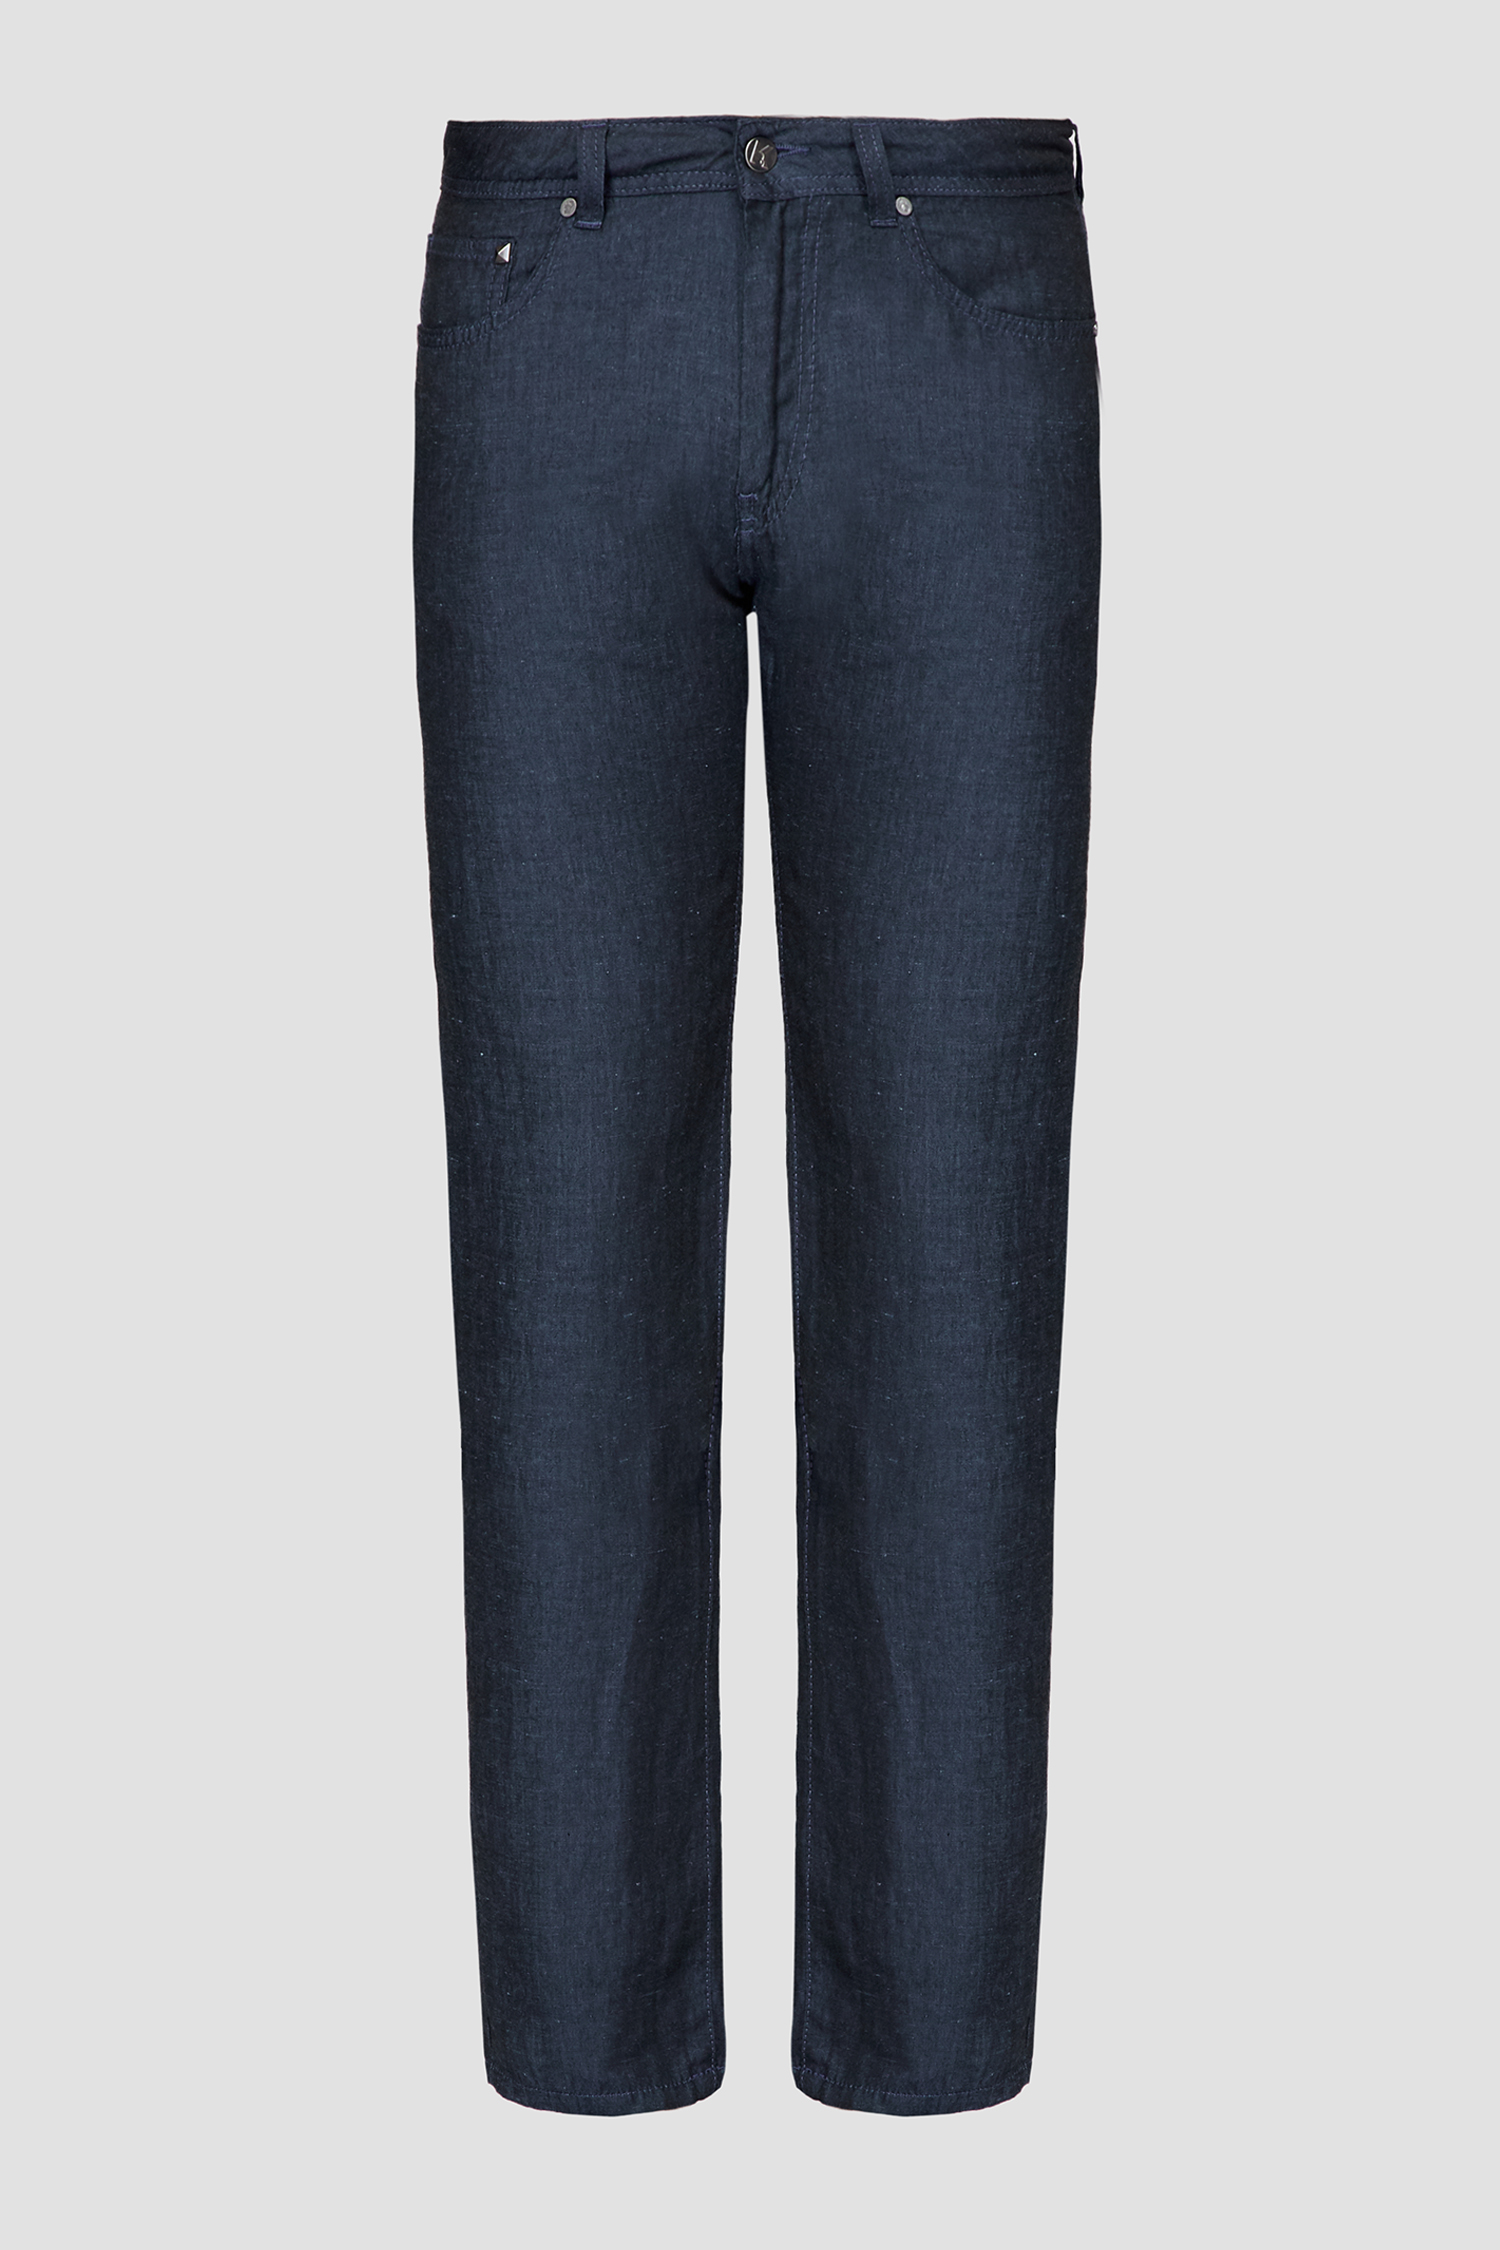 Мужские темно-синие льняные брюки Karl Lagerfeld 501816.265840;690